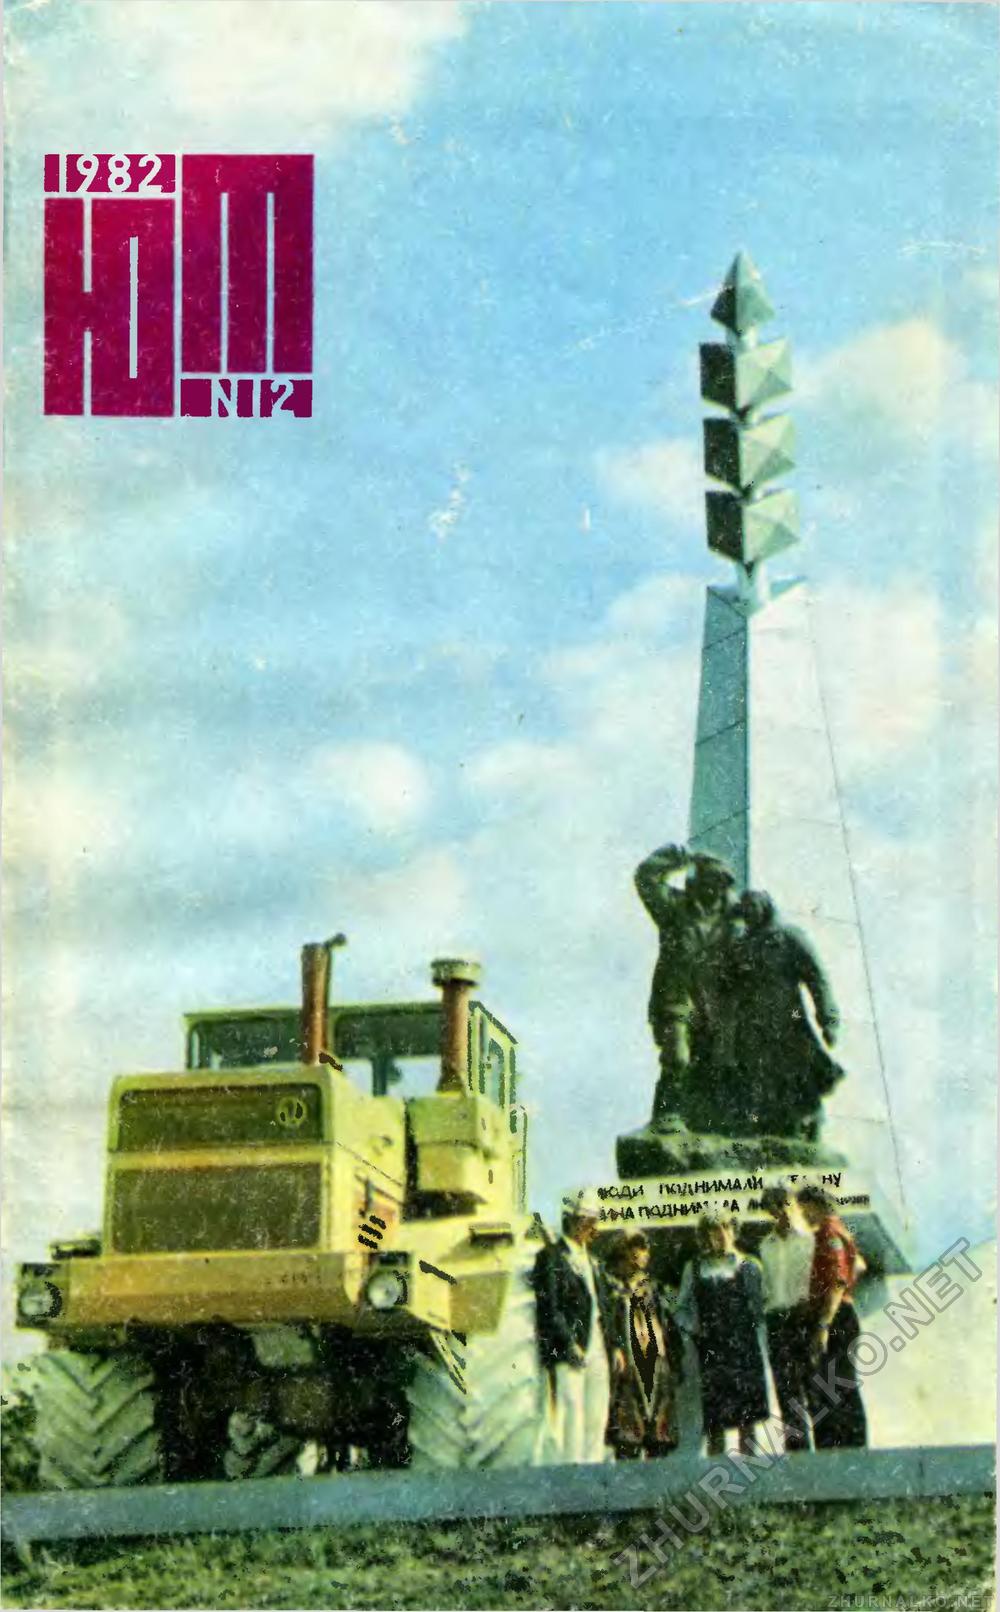   1982-12,  1